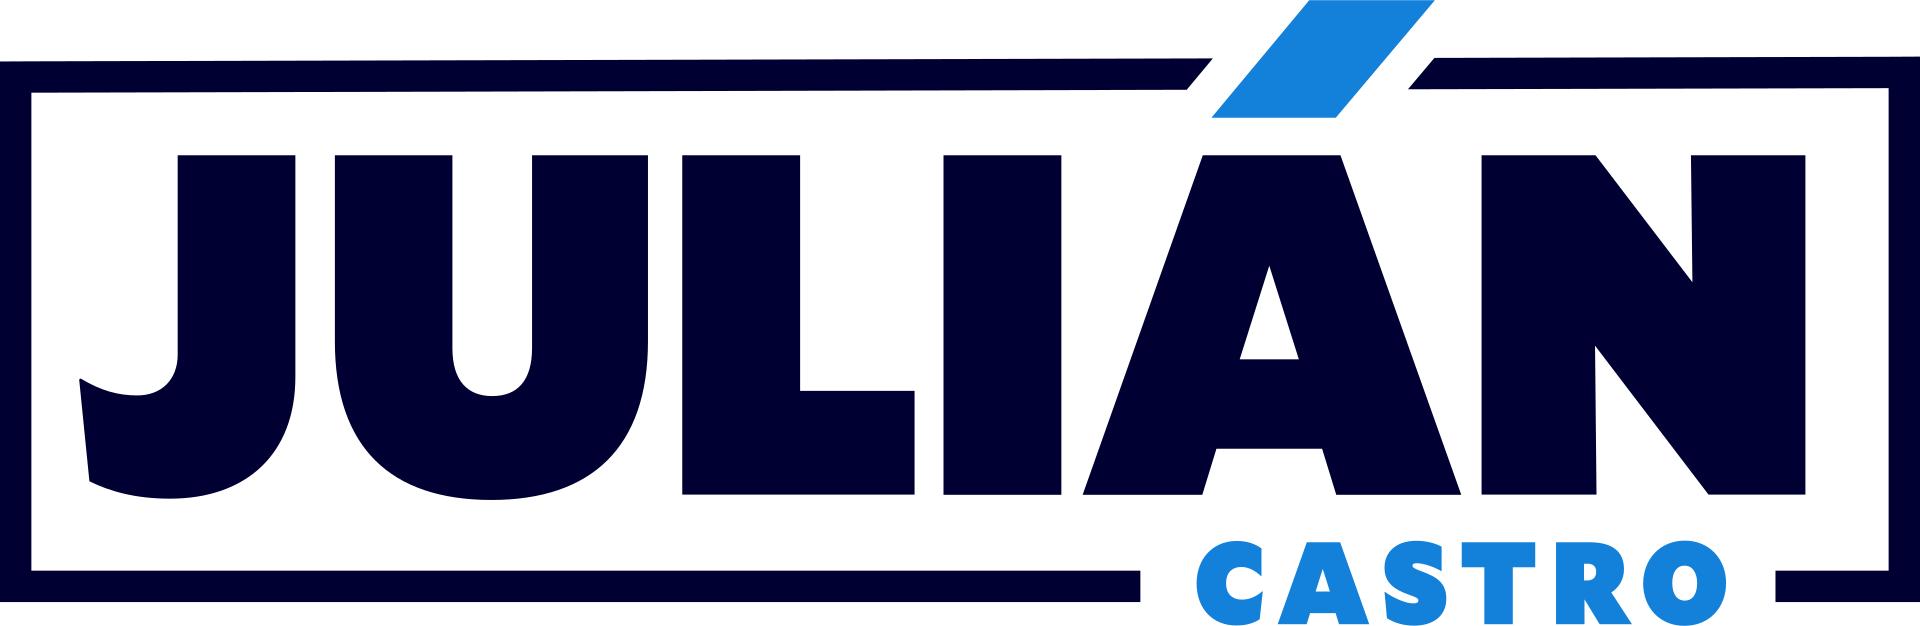 Castro campaign logo